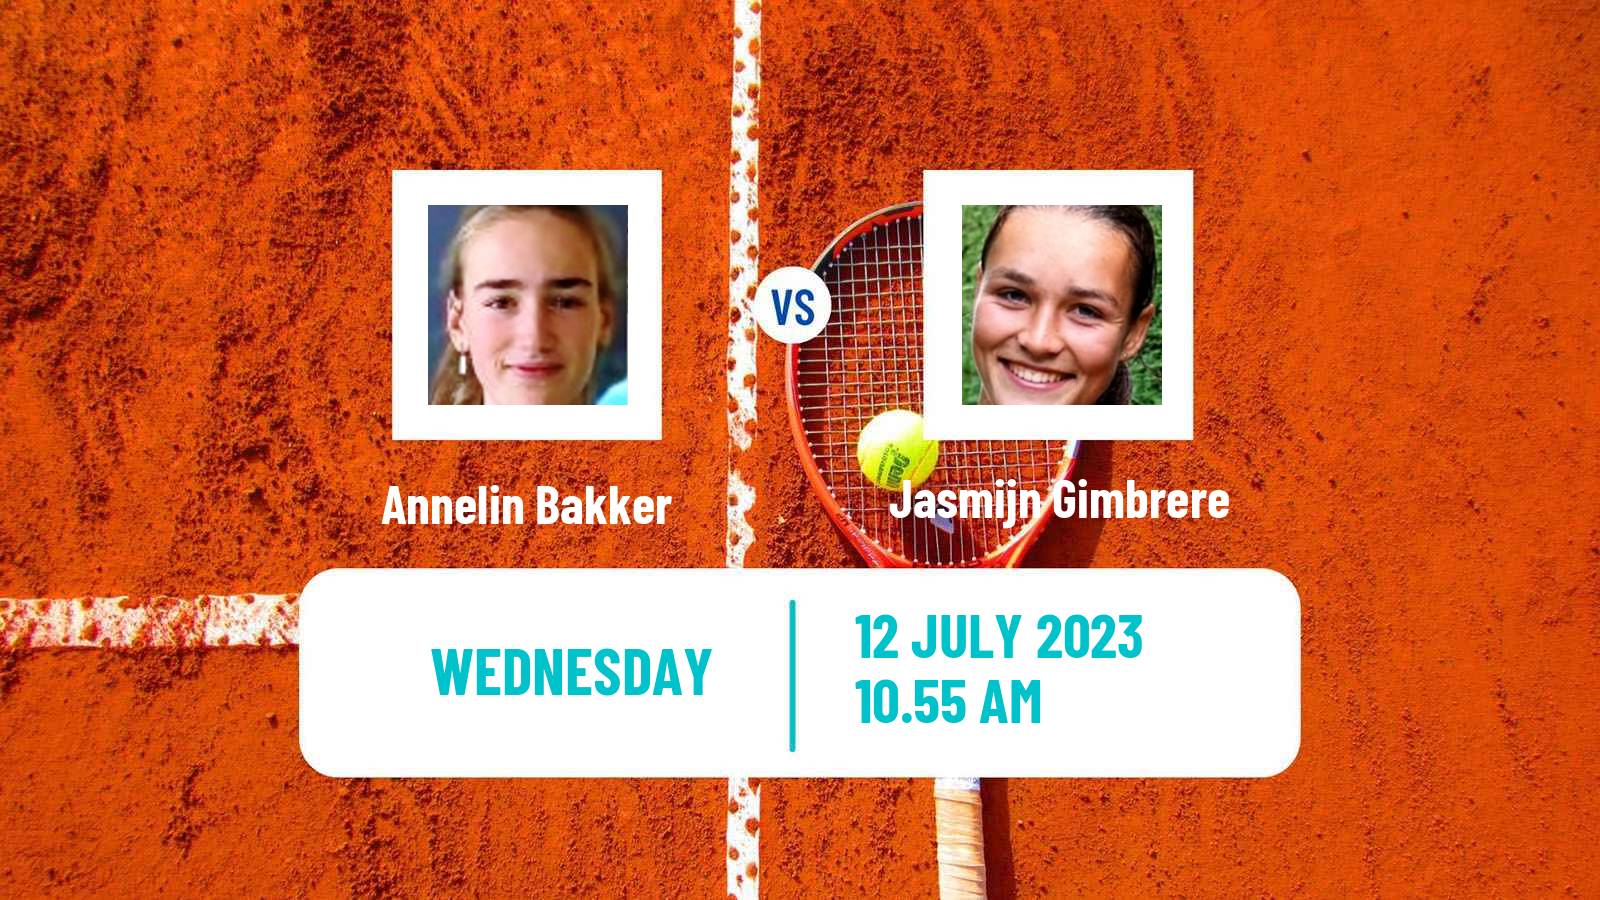 Tennis ITF W60 Amstelveen Women Annelin Bakker - Jasmijn Gimbrere